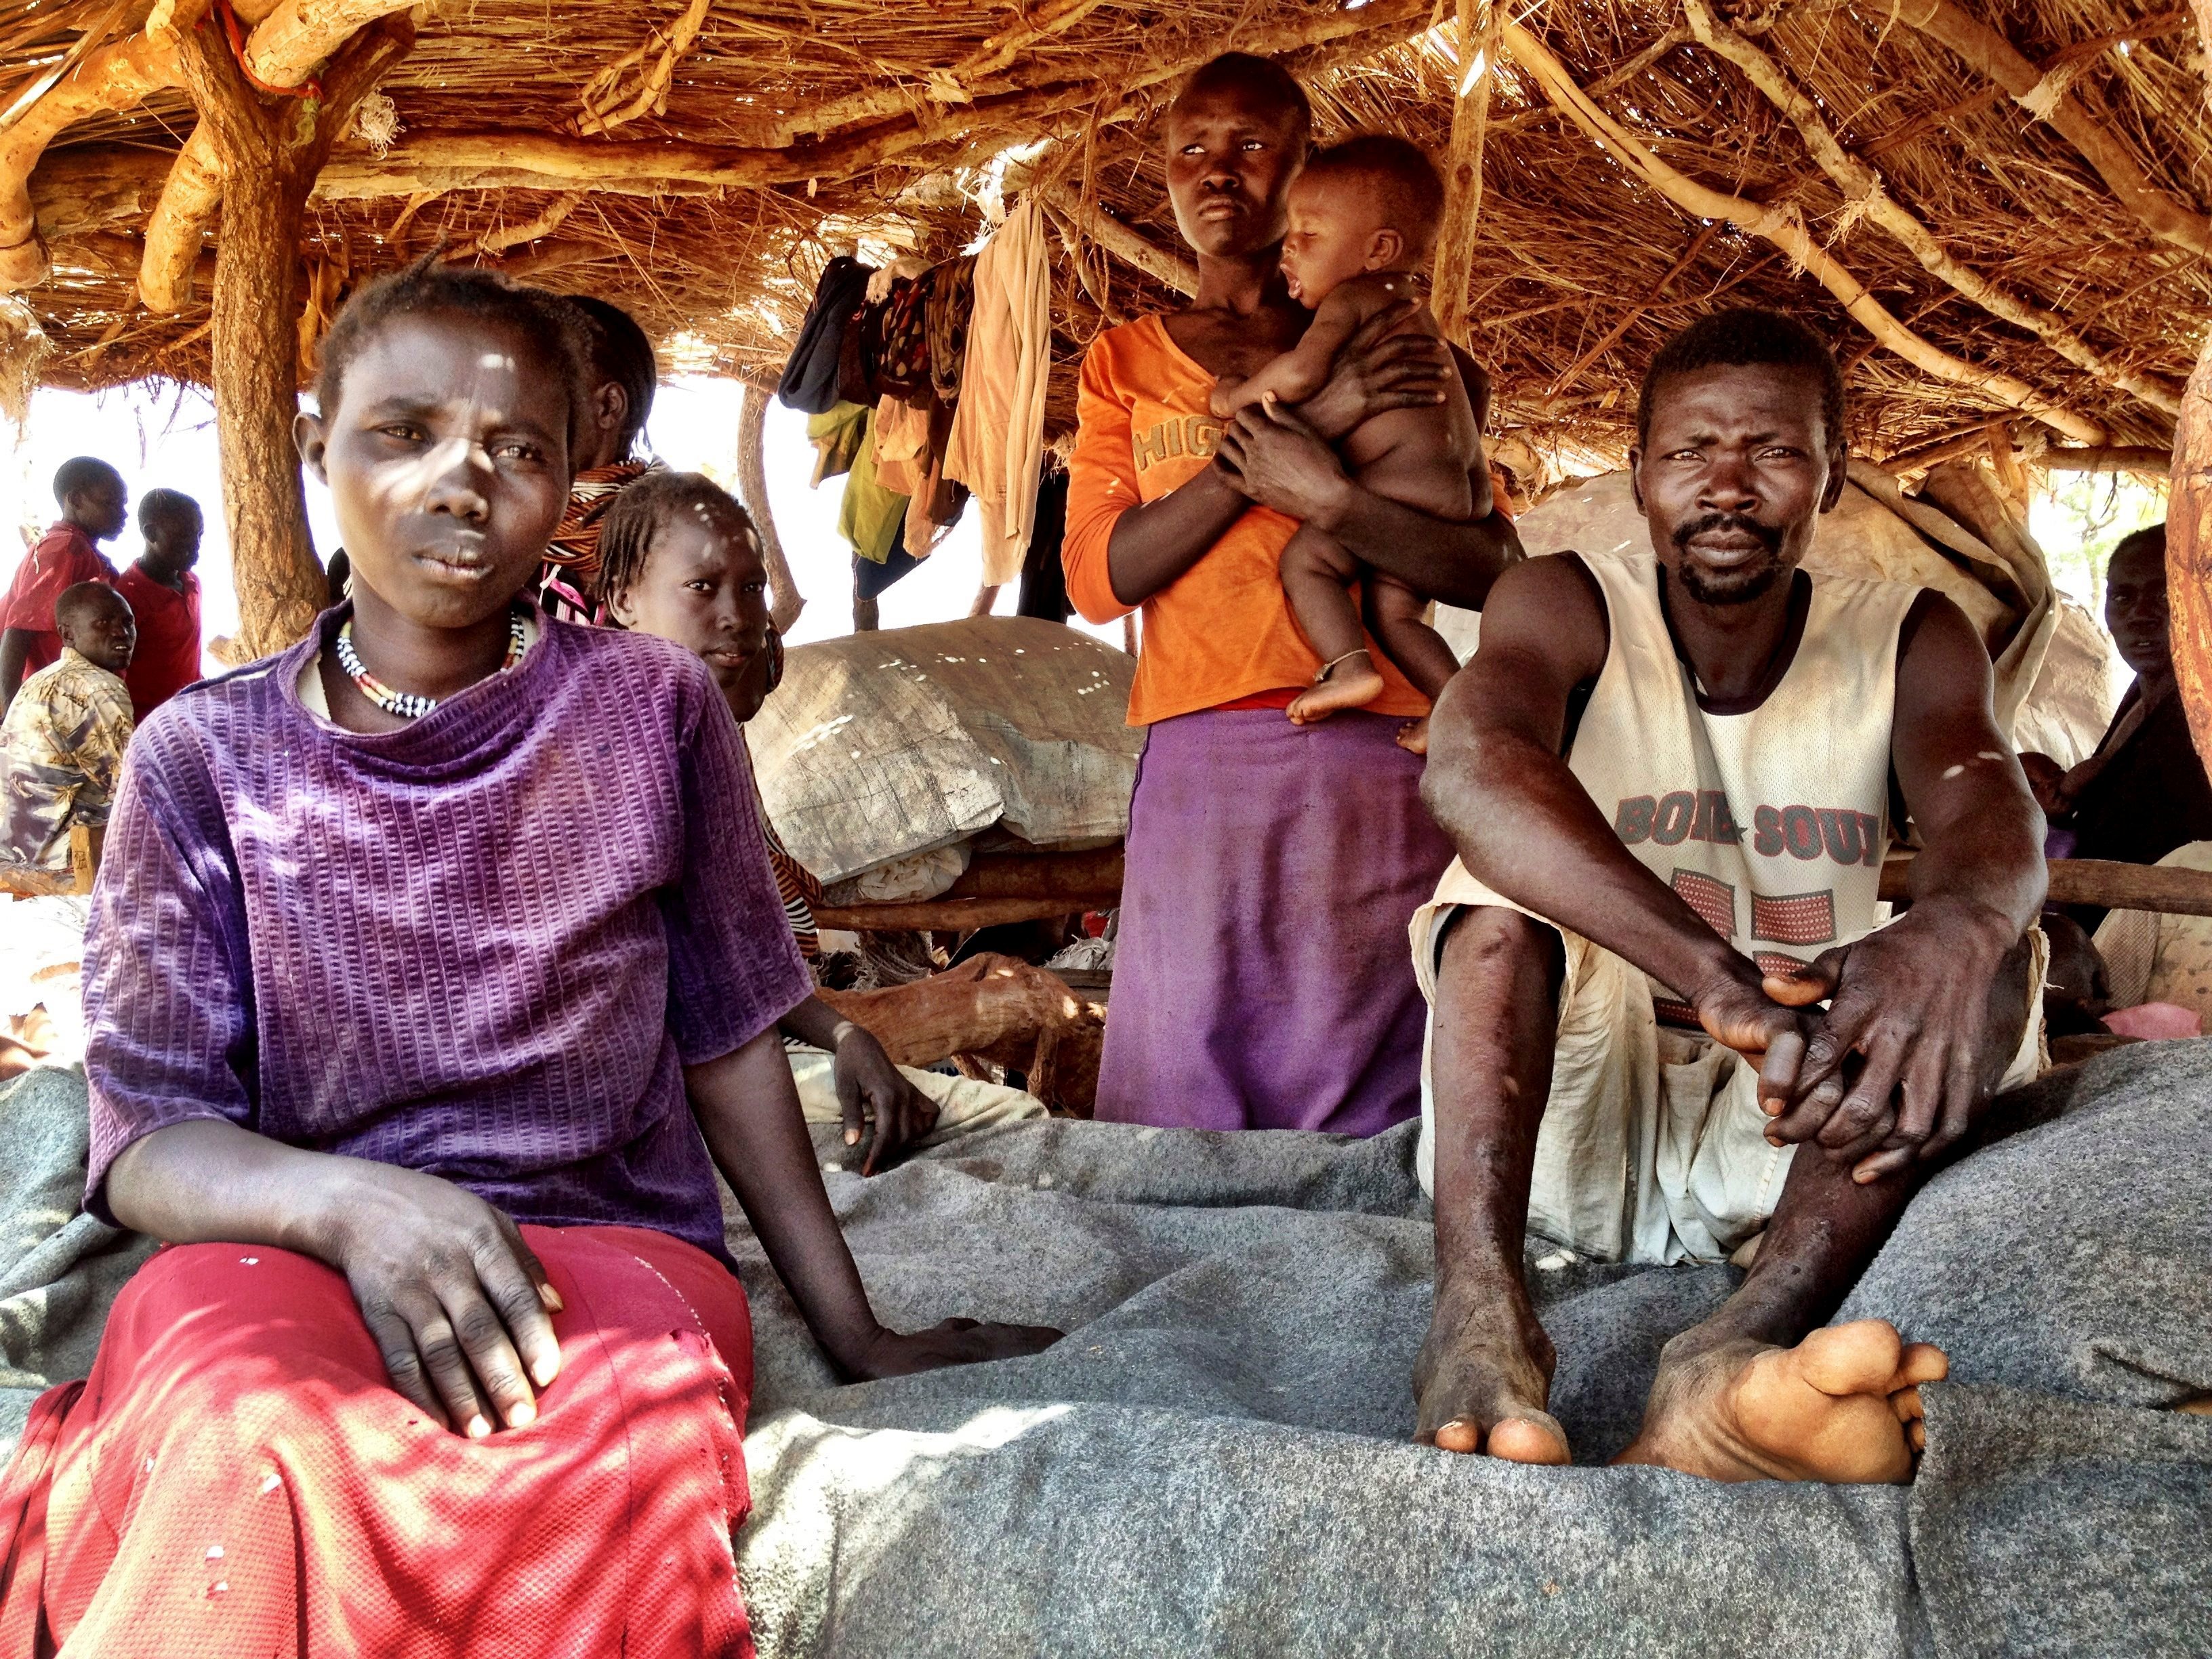 收拾残局: 联合国难民署协助南苏丹难民营冲突的受害者